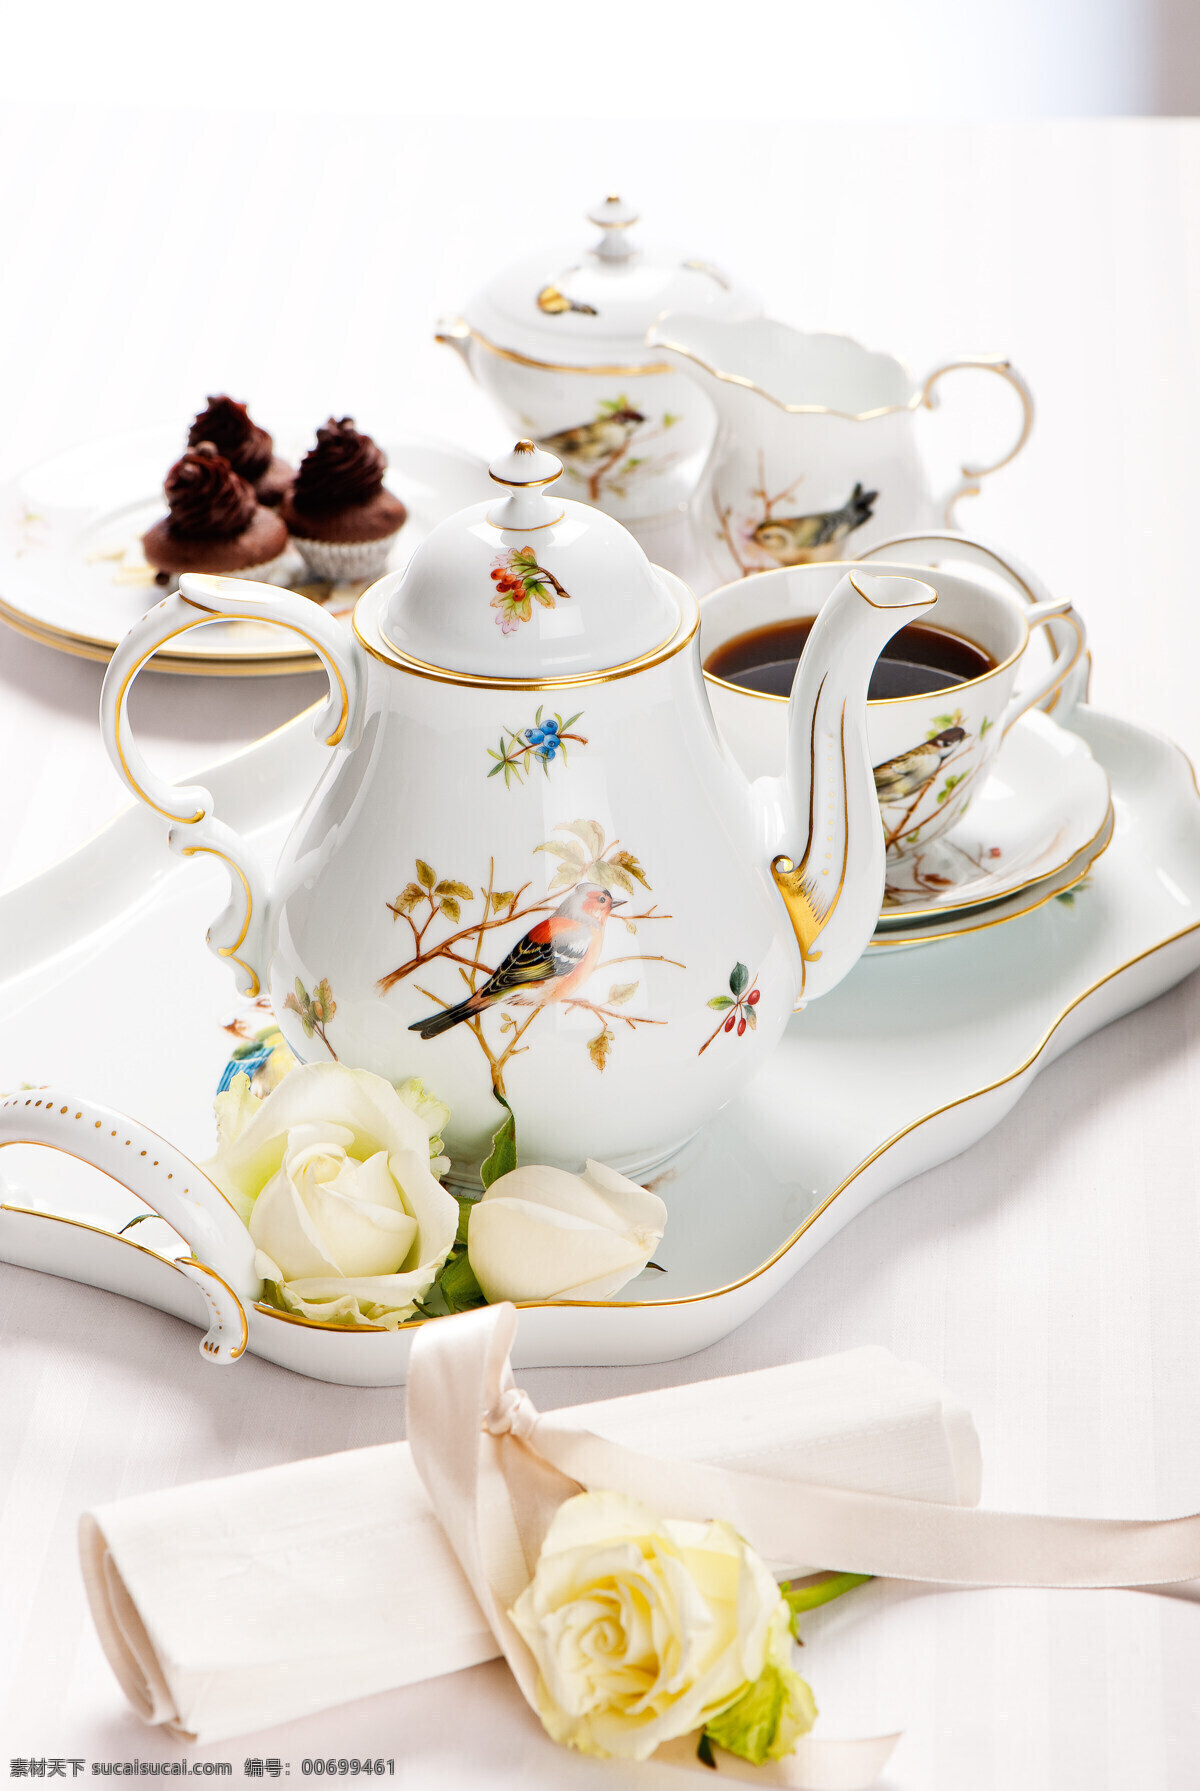 英式下午茶 下午茶 英伦 茶具 玫瑰花 西式 英式 浪漫 优雅 生活百科 生活素材